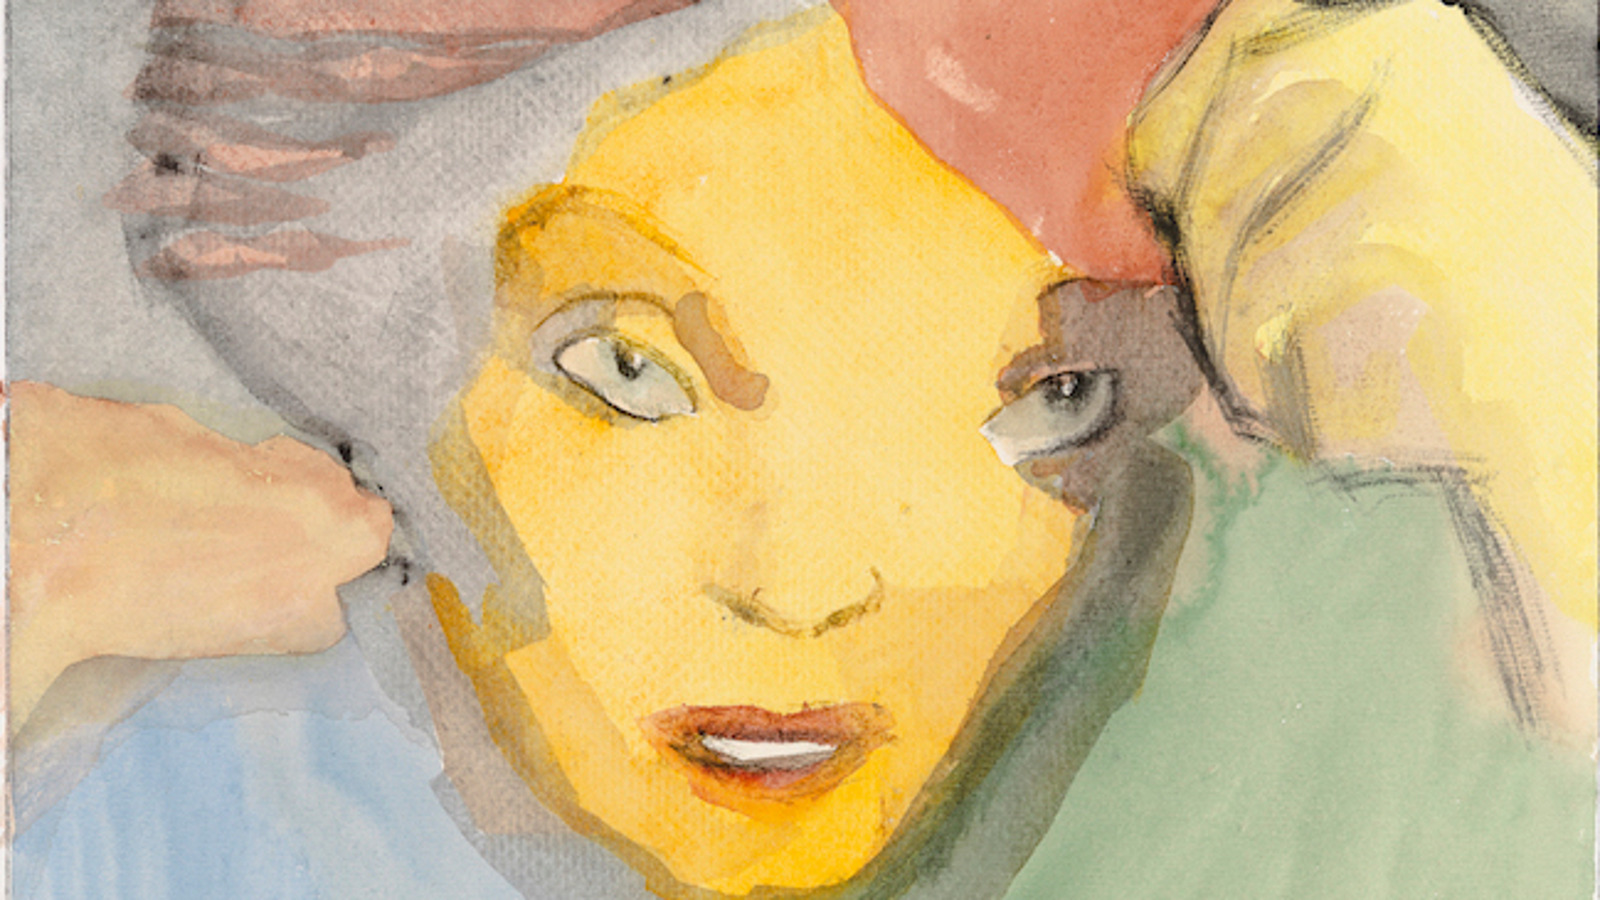 Kuvassa on Olli Lyytikäisen maalaama teos Kontrapunkti ja siinä on naisen kasvot.  Naisen kasvot on maalattu keltaiseksi ja hiuksissä on punertavaa. Hiusrajaa on maalattu harmaaksi ja oikealla on keltainen käsi.  Maalauksessa näkyy puseroa, joka on oikealla vihertävä ja vasemmalla sinertävä. 